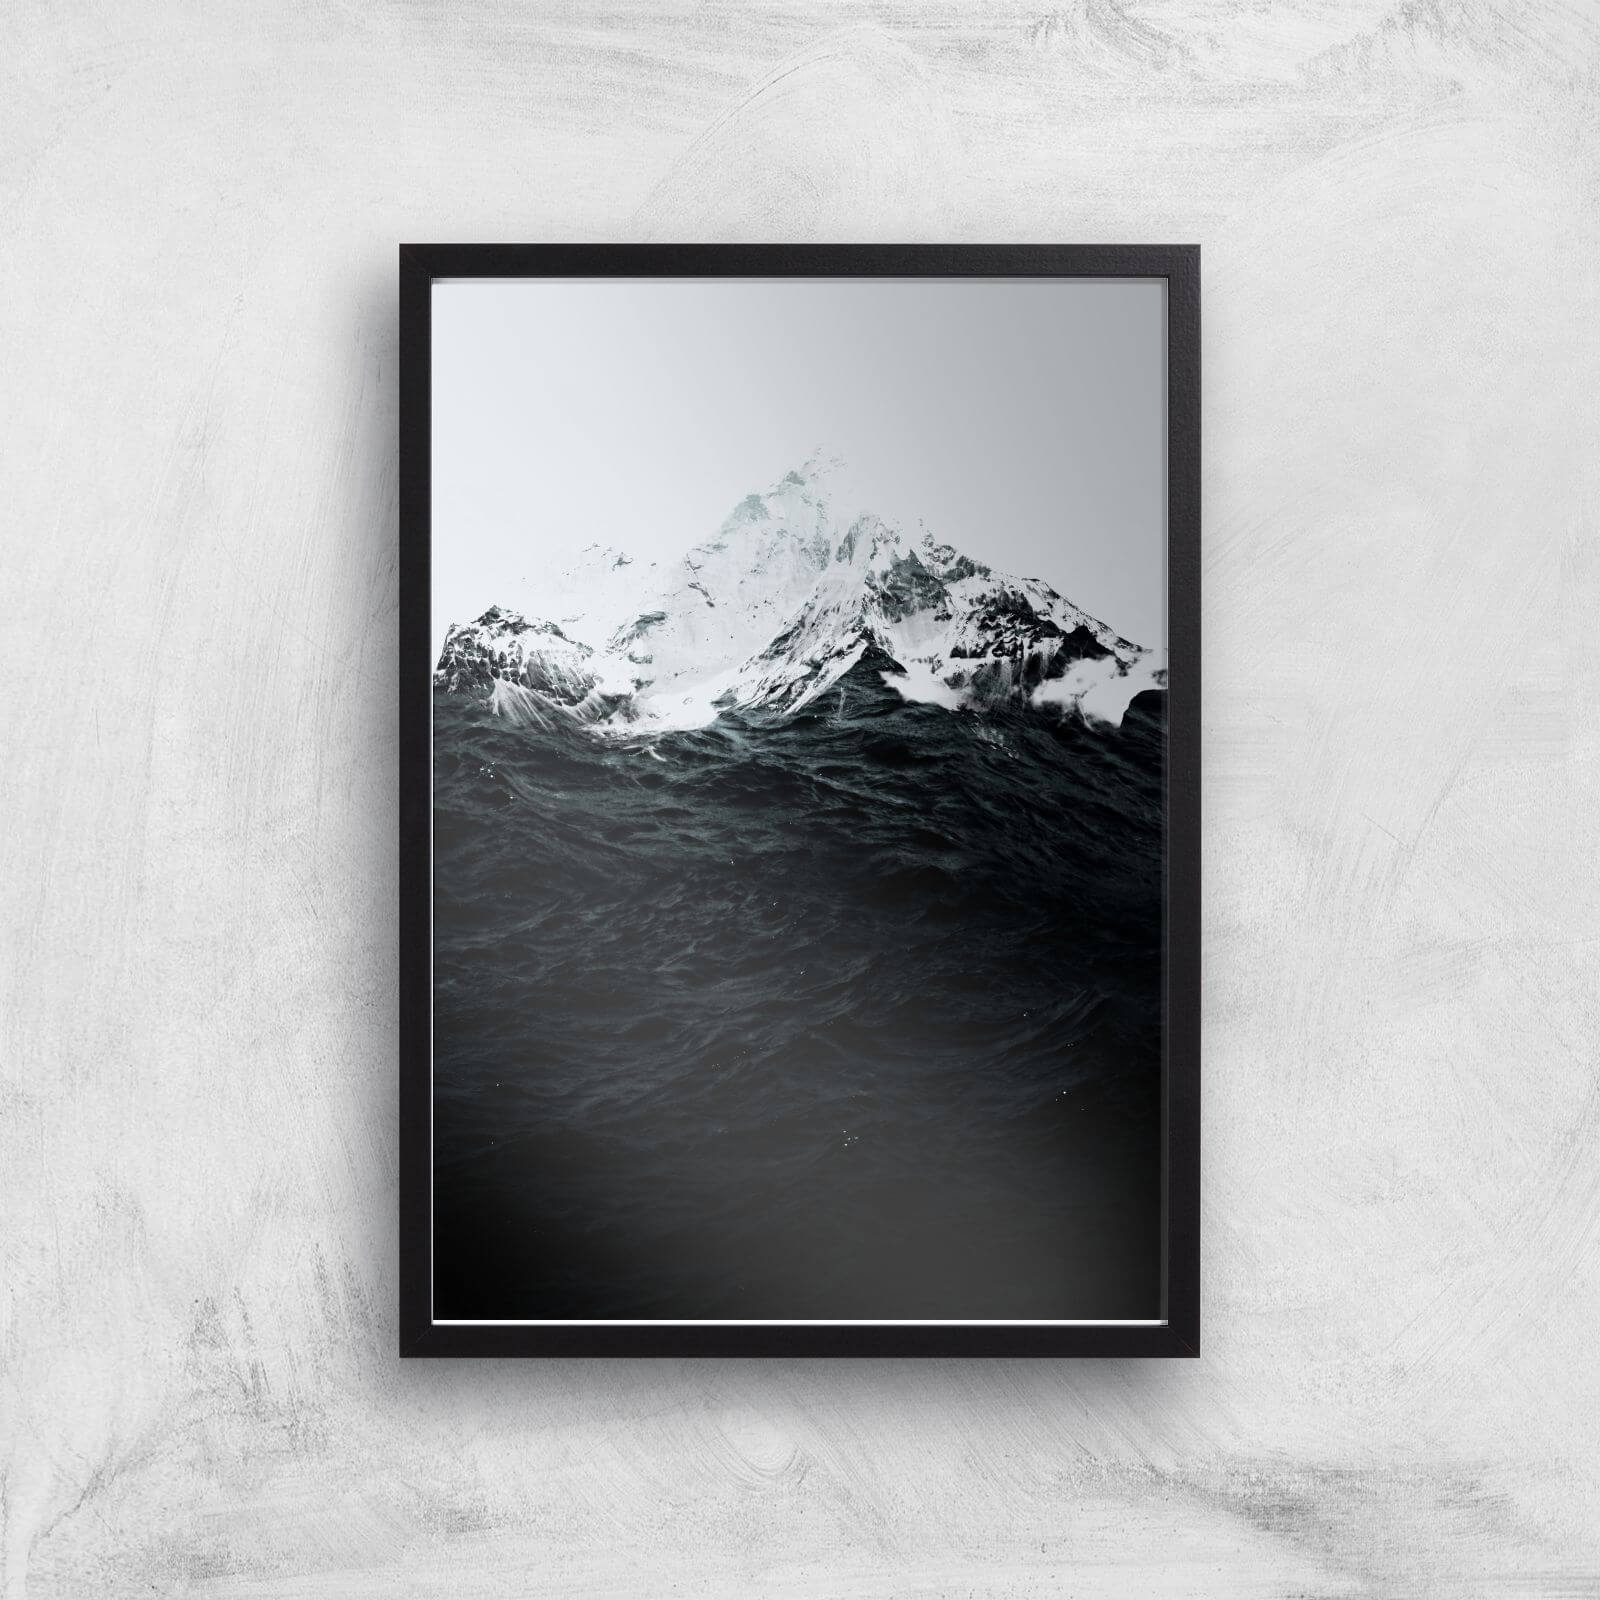 Those Waves Were Like Mountains Giclee Art Print - A3 - Black Frame